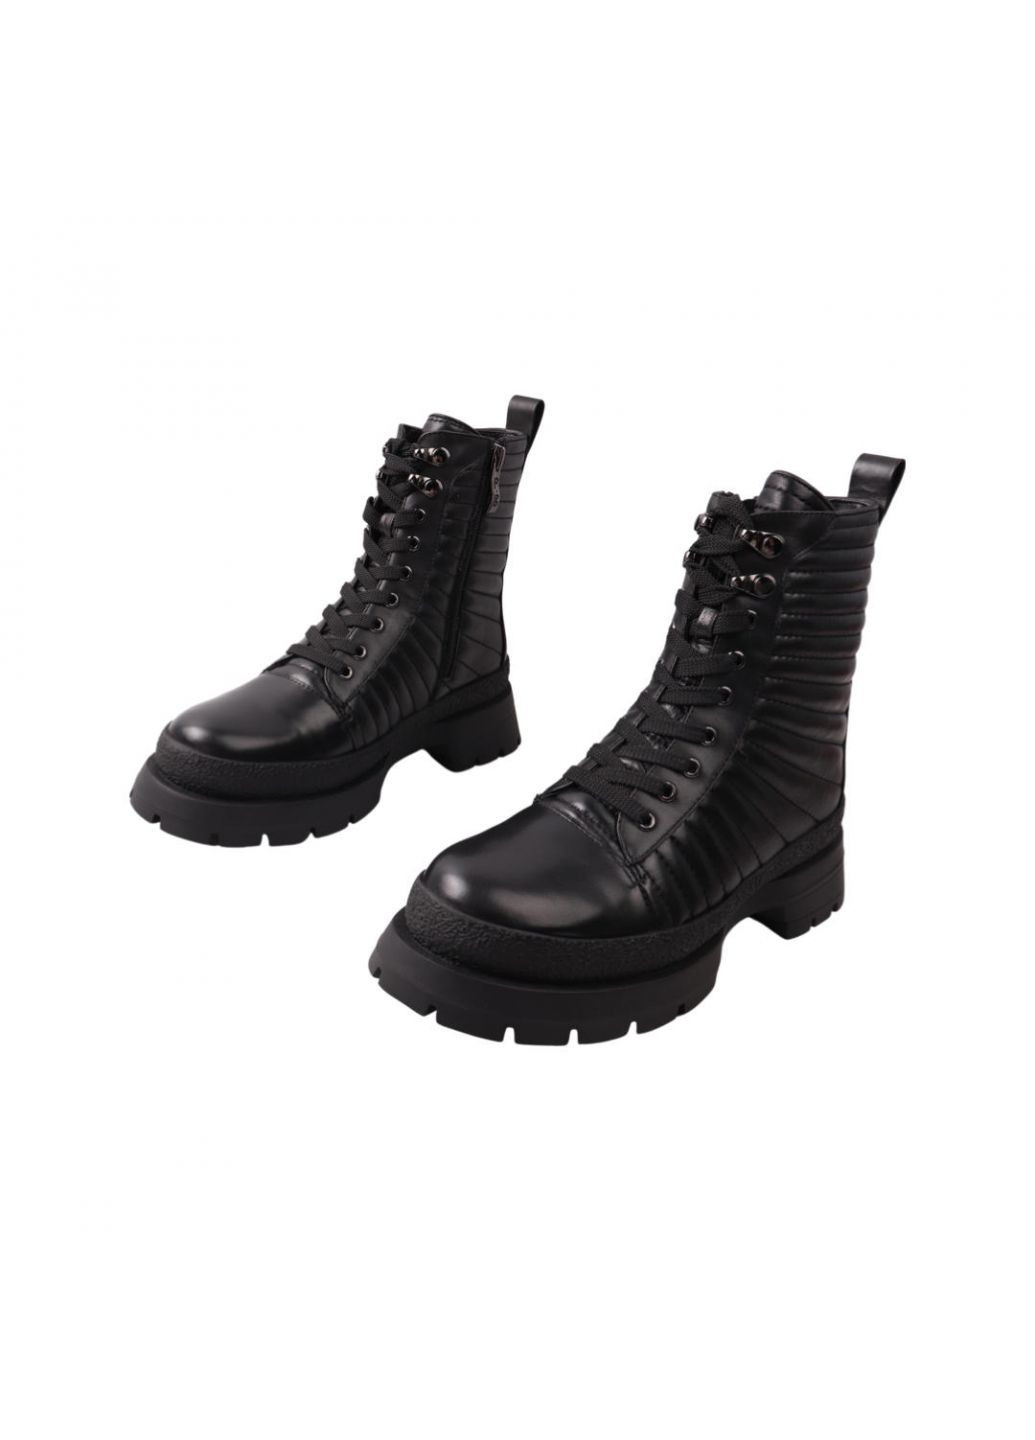 ботинки женские черные натуральная кожа Beratroni